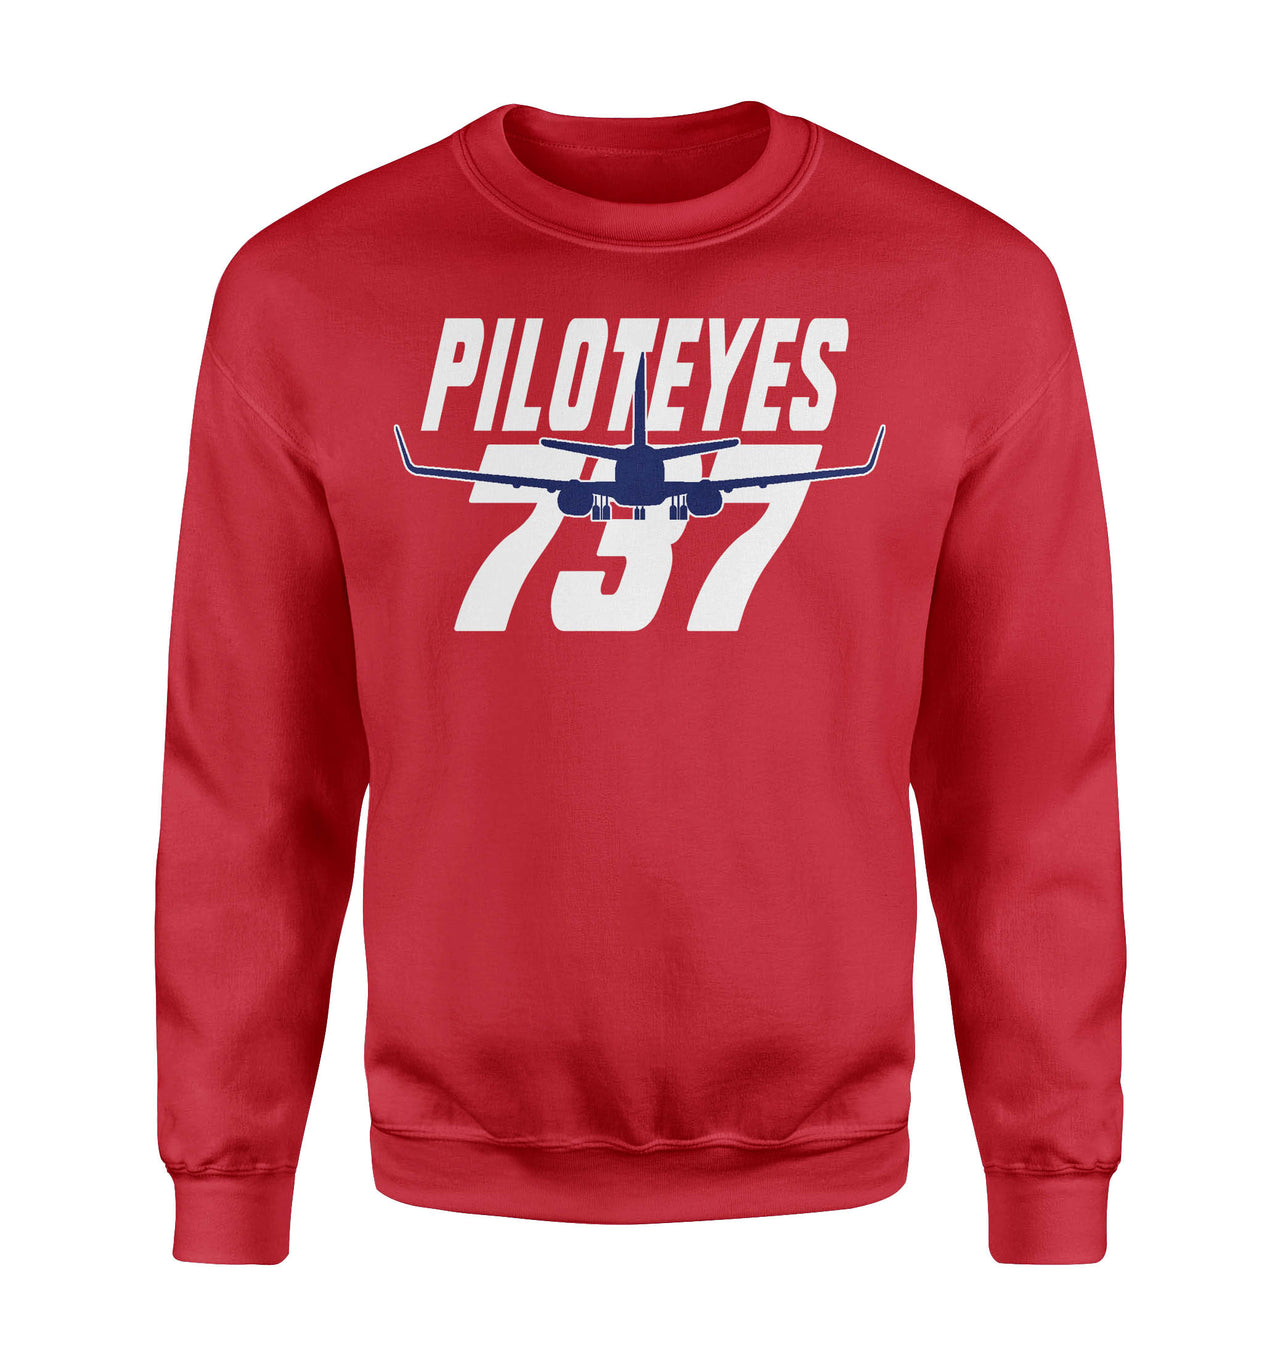 Amazing Piloteyes737 Designed Sweatshirts